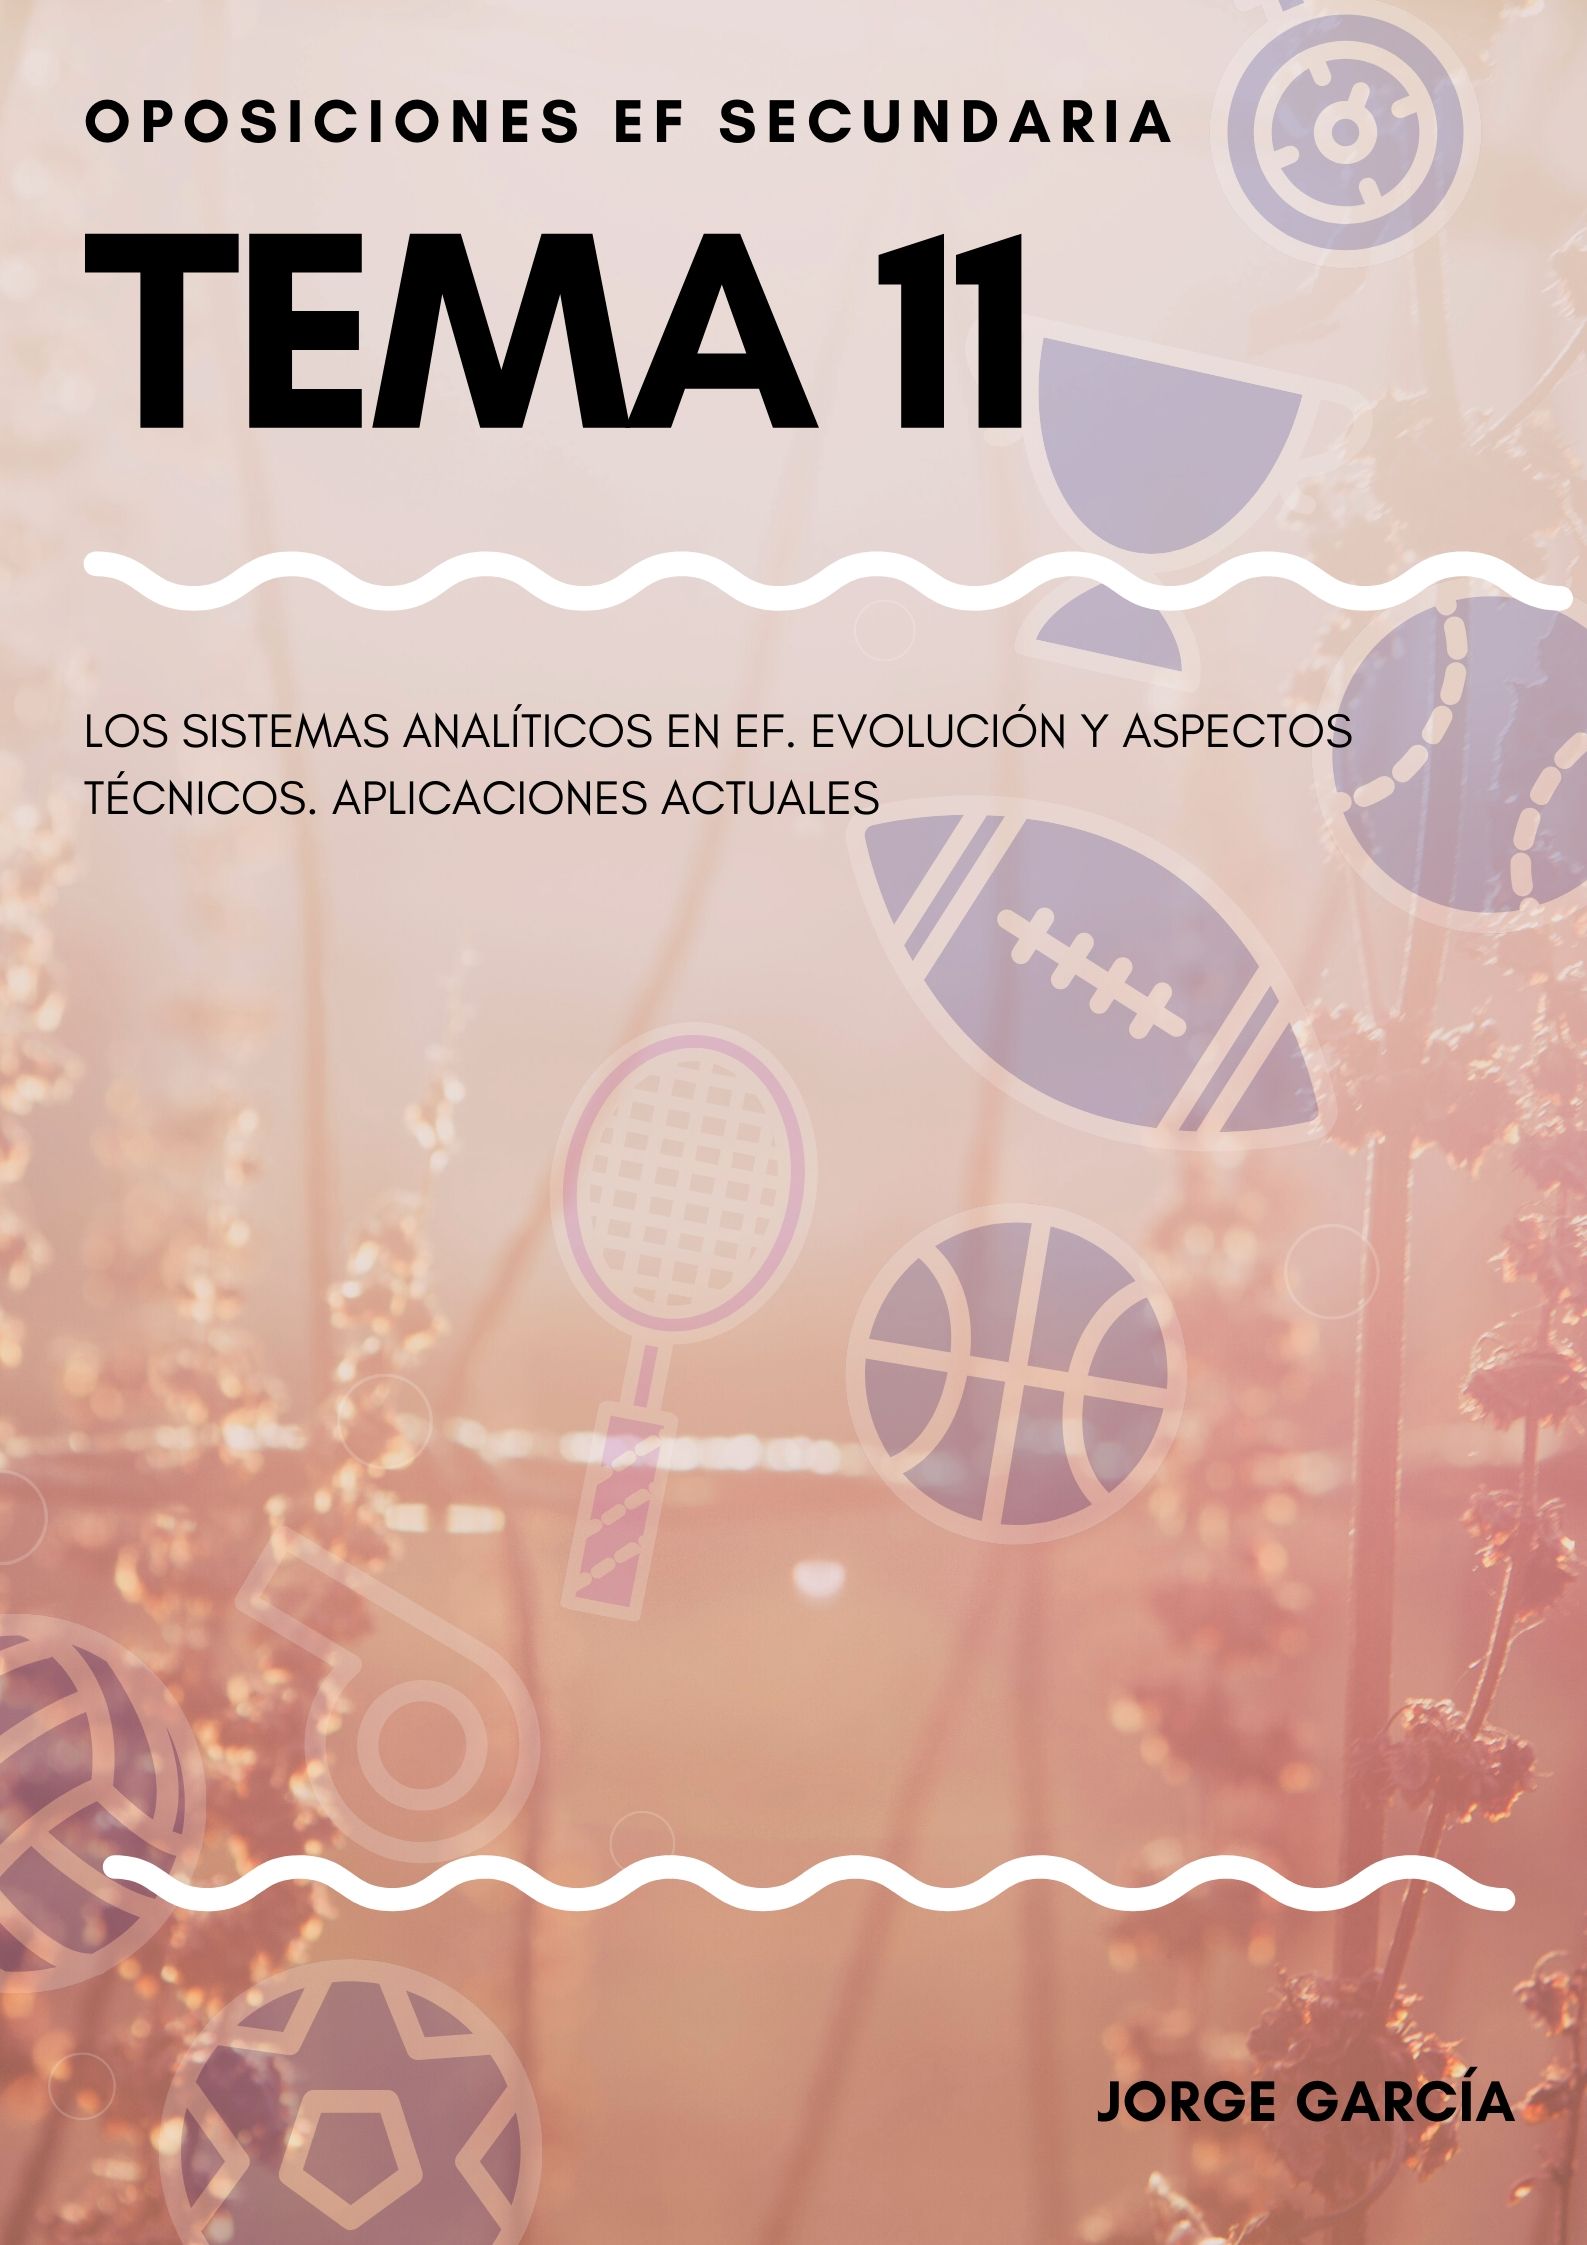 TEMA 11.jpg